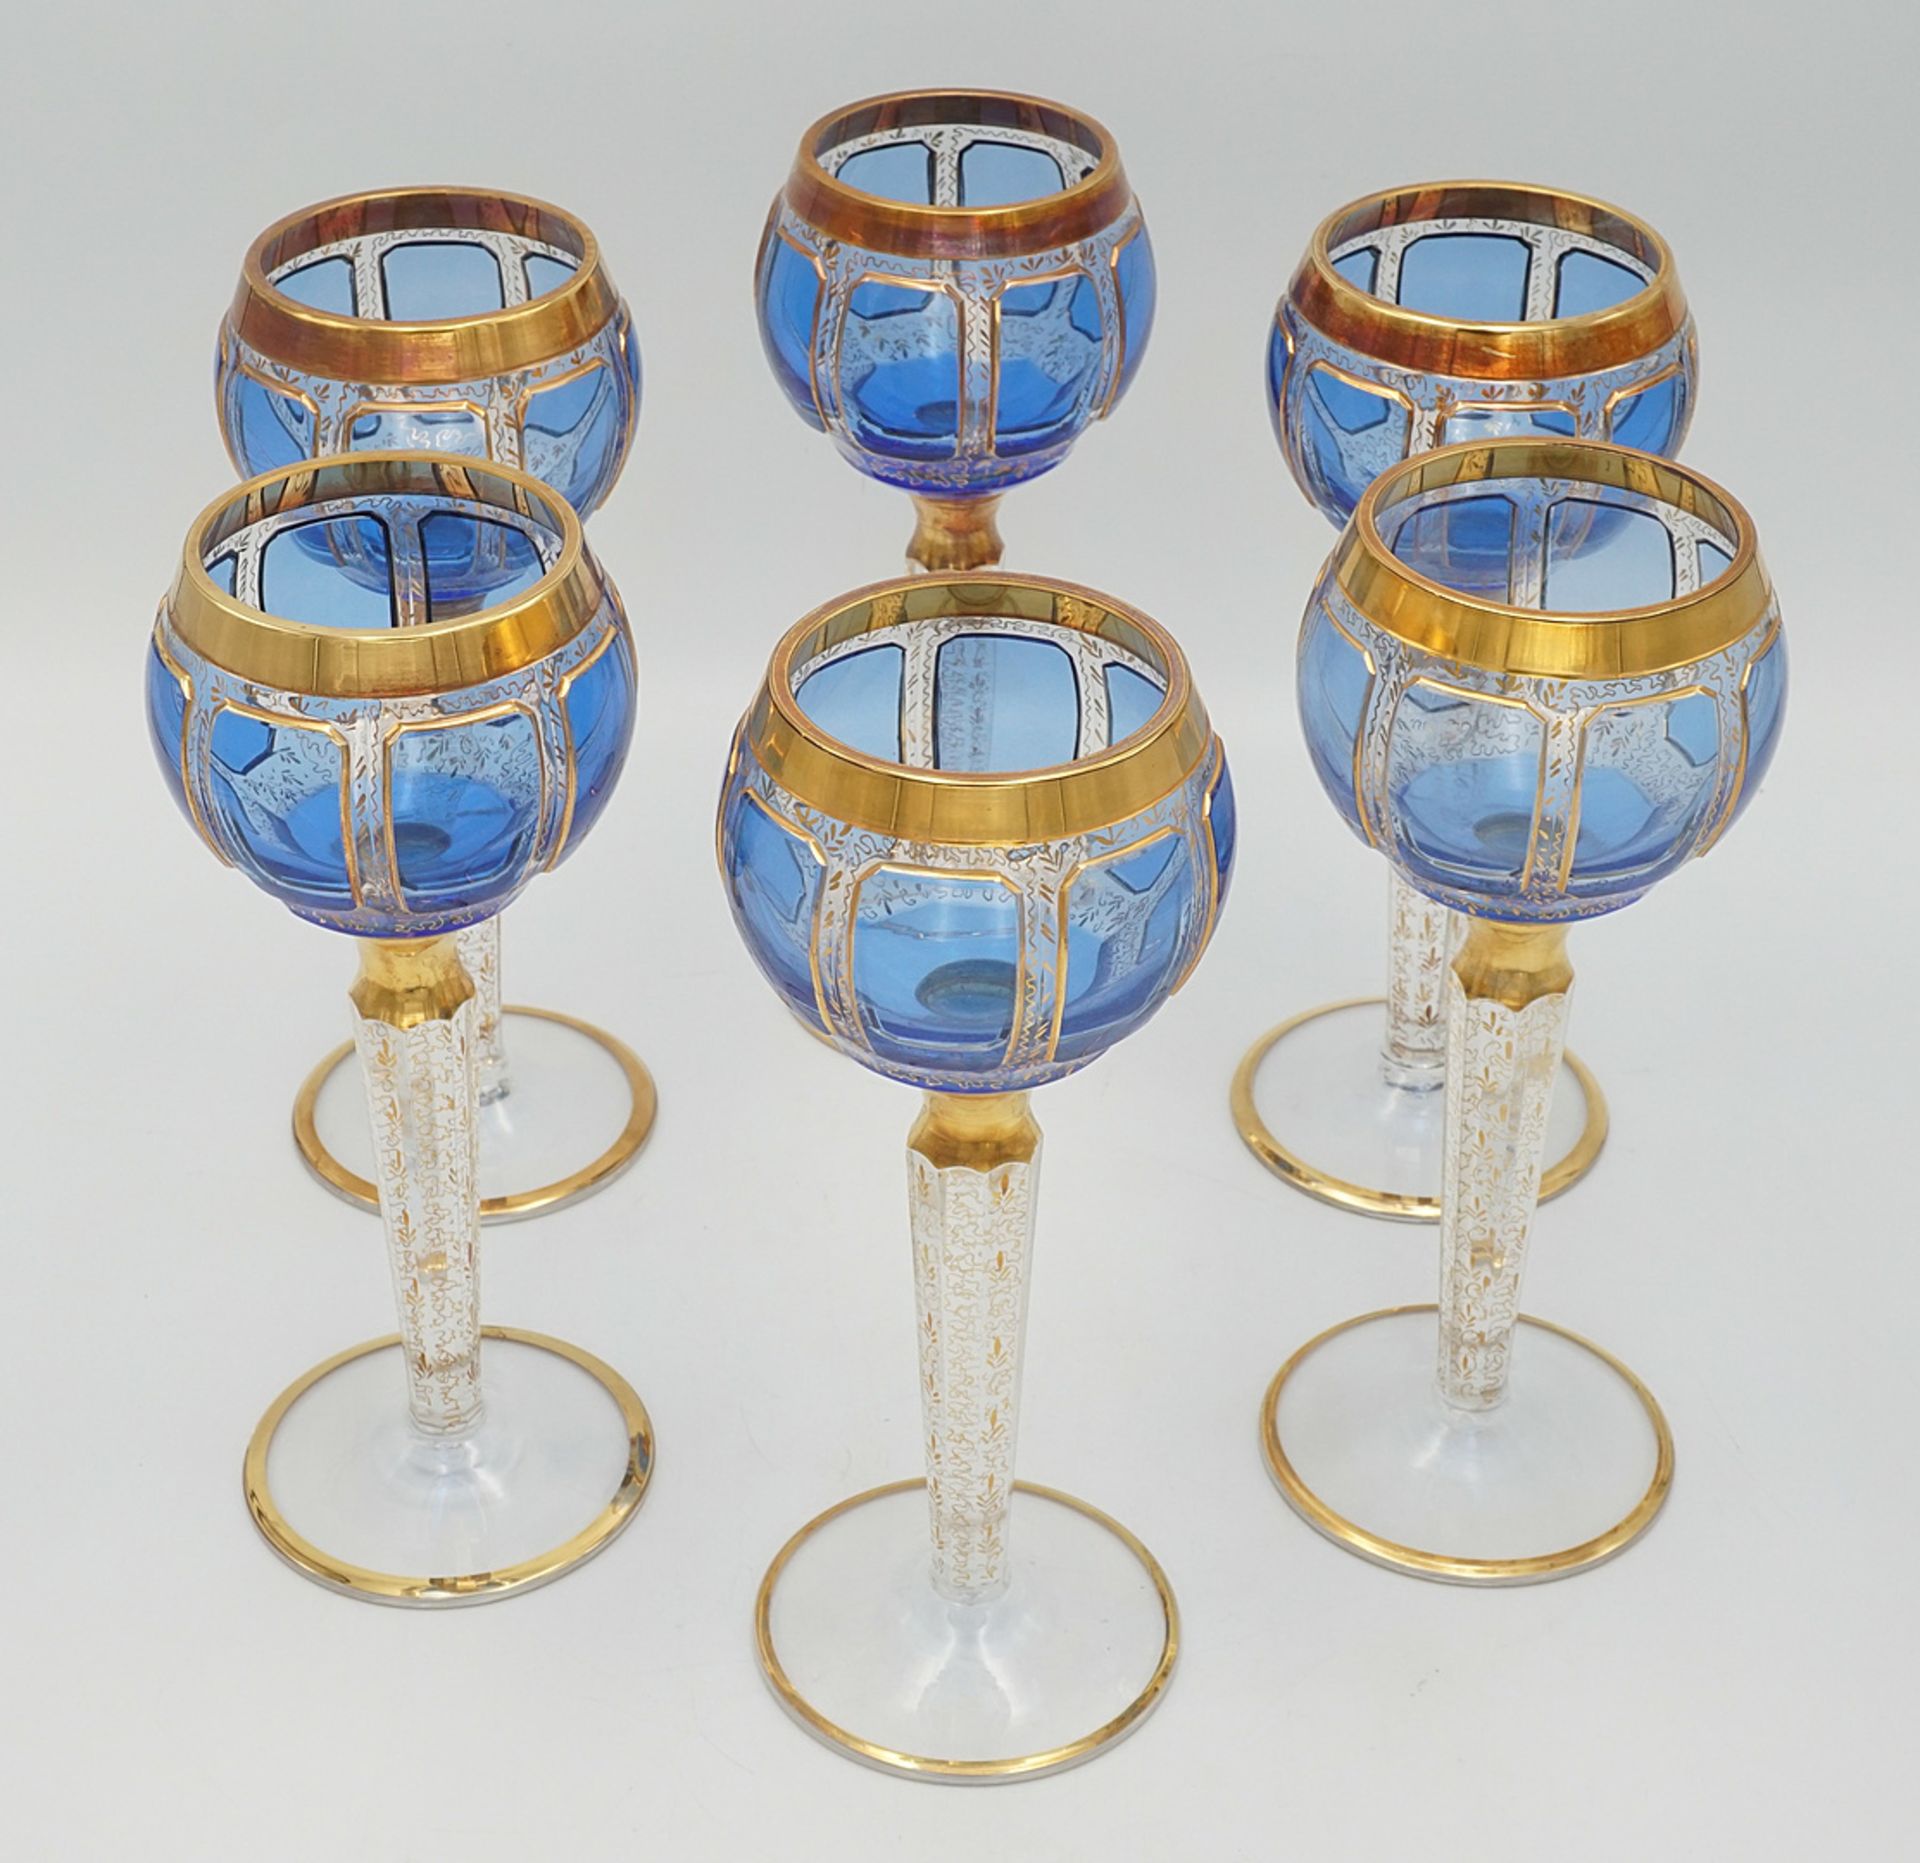 Six probably Steiner & Vogel Vohenstrauss magnificent wine glasses, around 1930 - Image 2 of 4